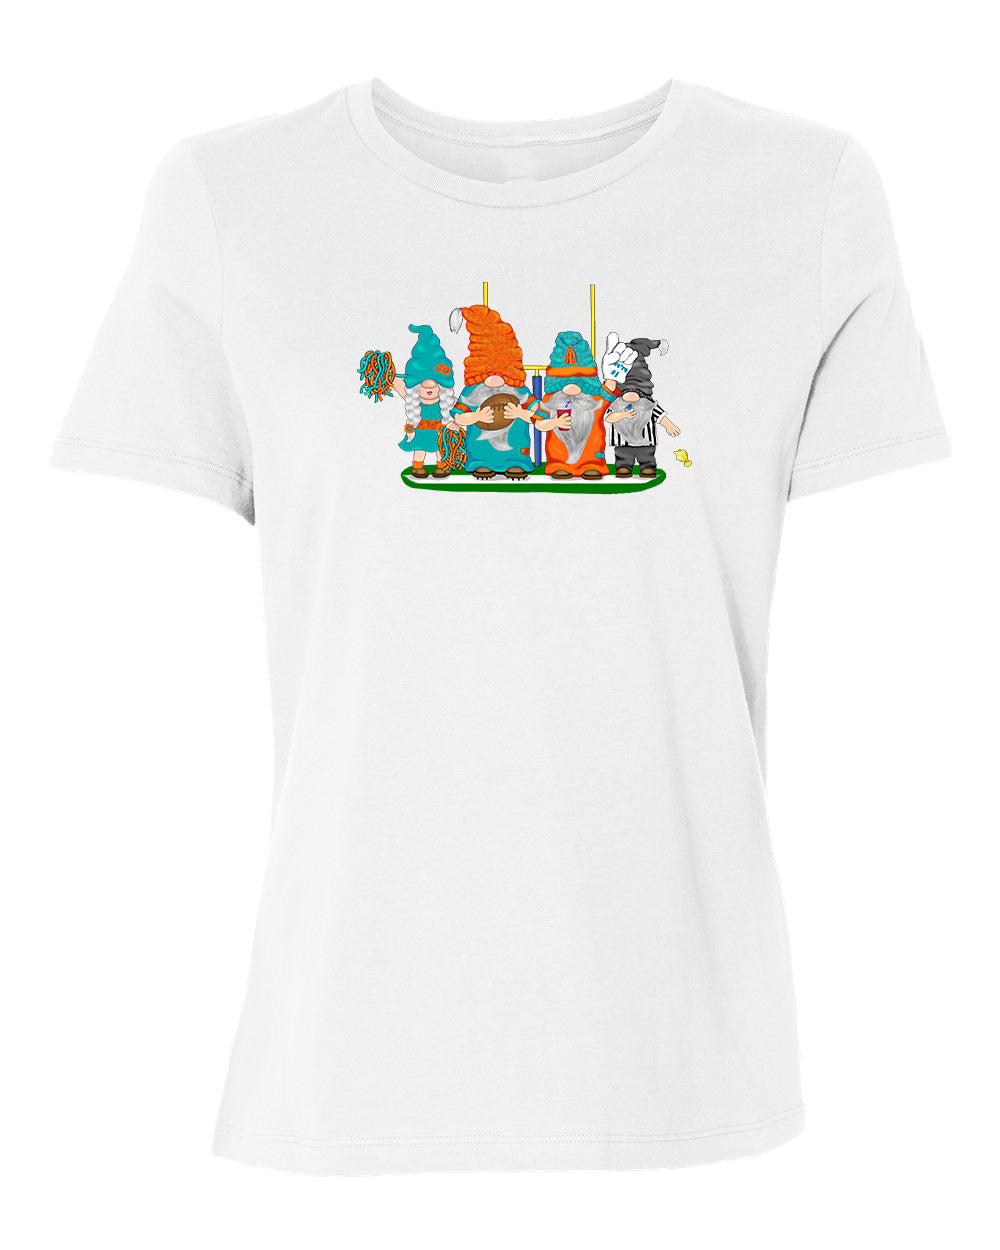 Aqua & Orange Football Gnomes on Women's T-shirt (similar to Miami)